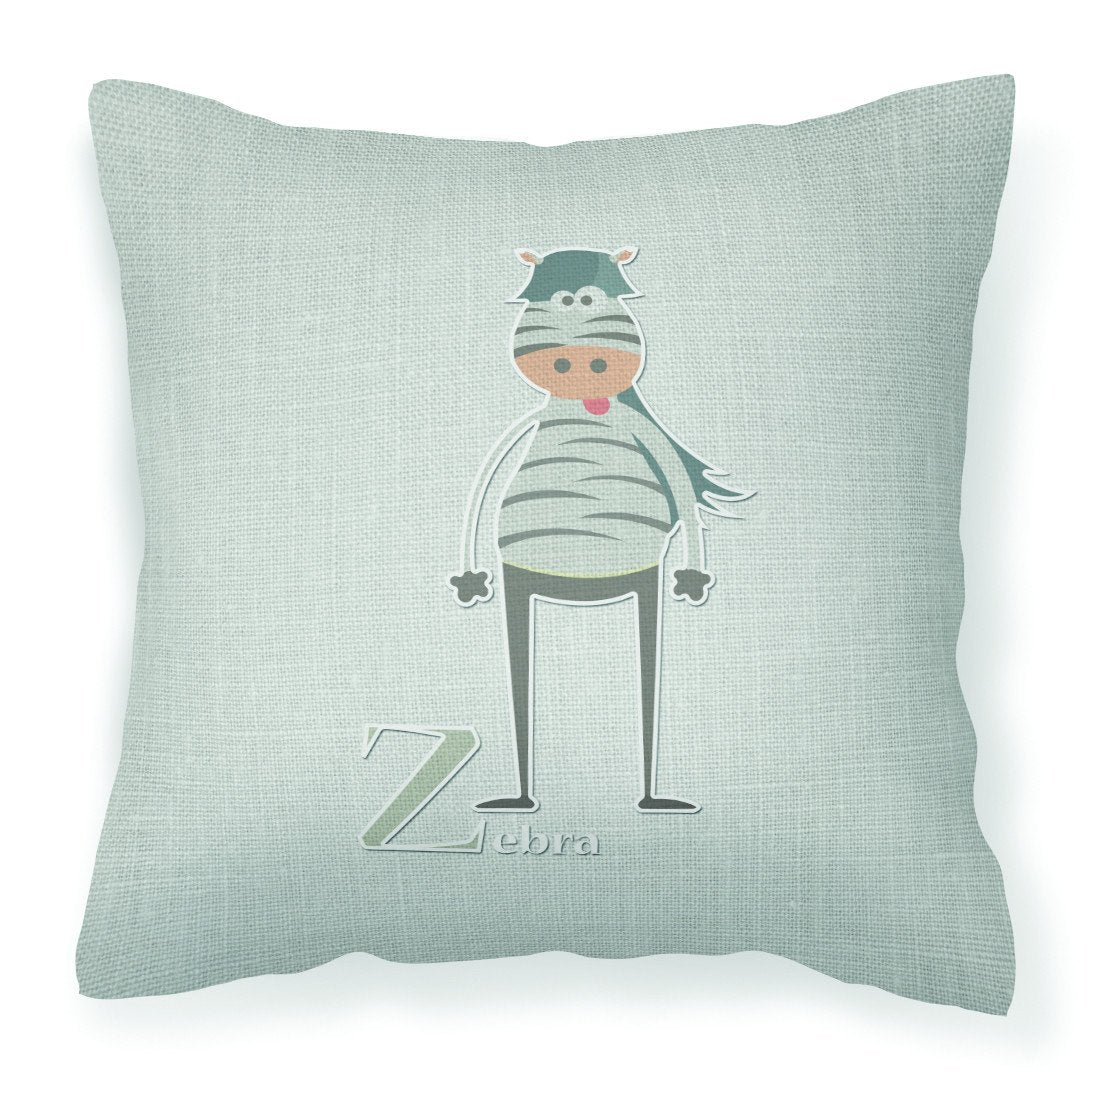 Alphabet Z for Zebra Fabric Decorative Pillow BB5751PW1818 by Caroline&#39;s Treasures